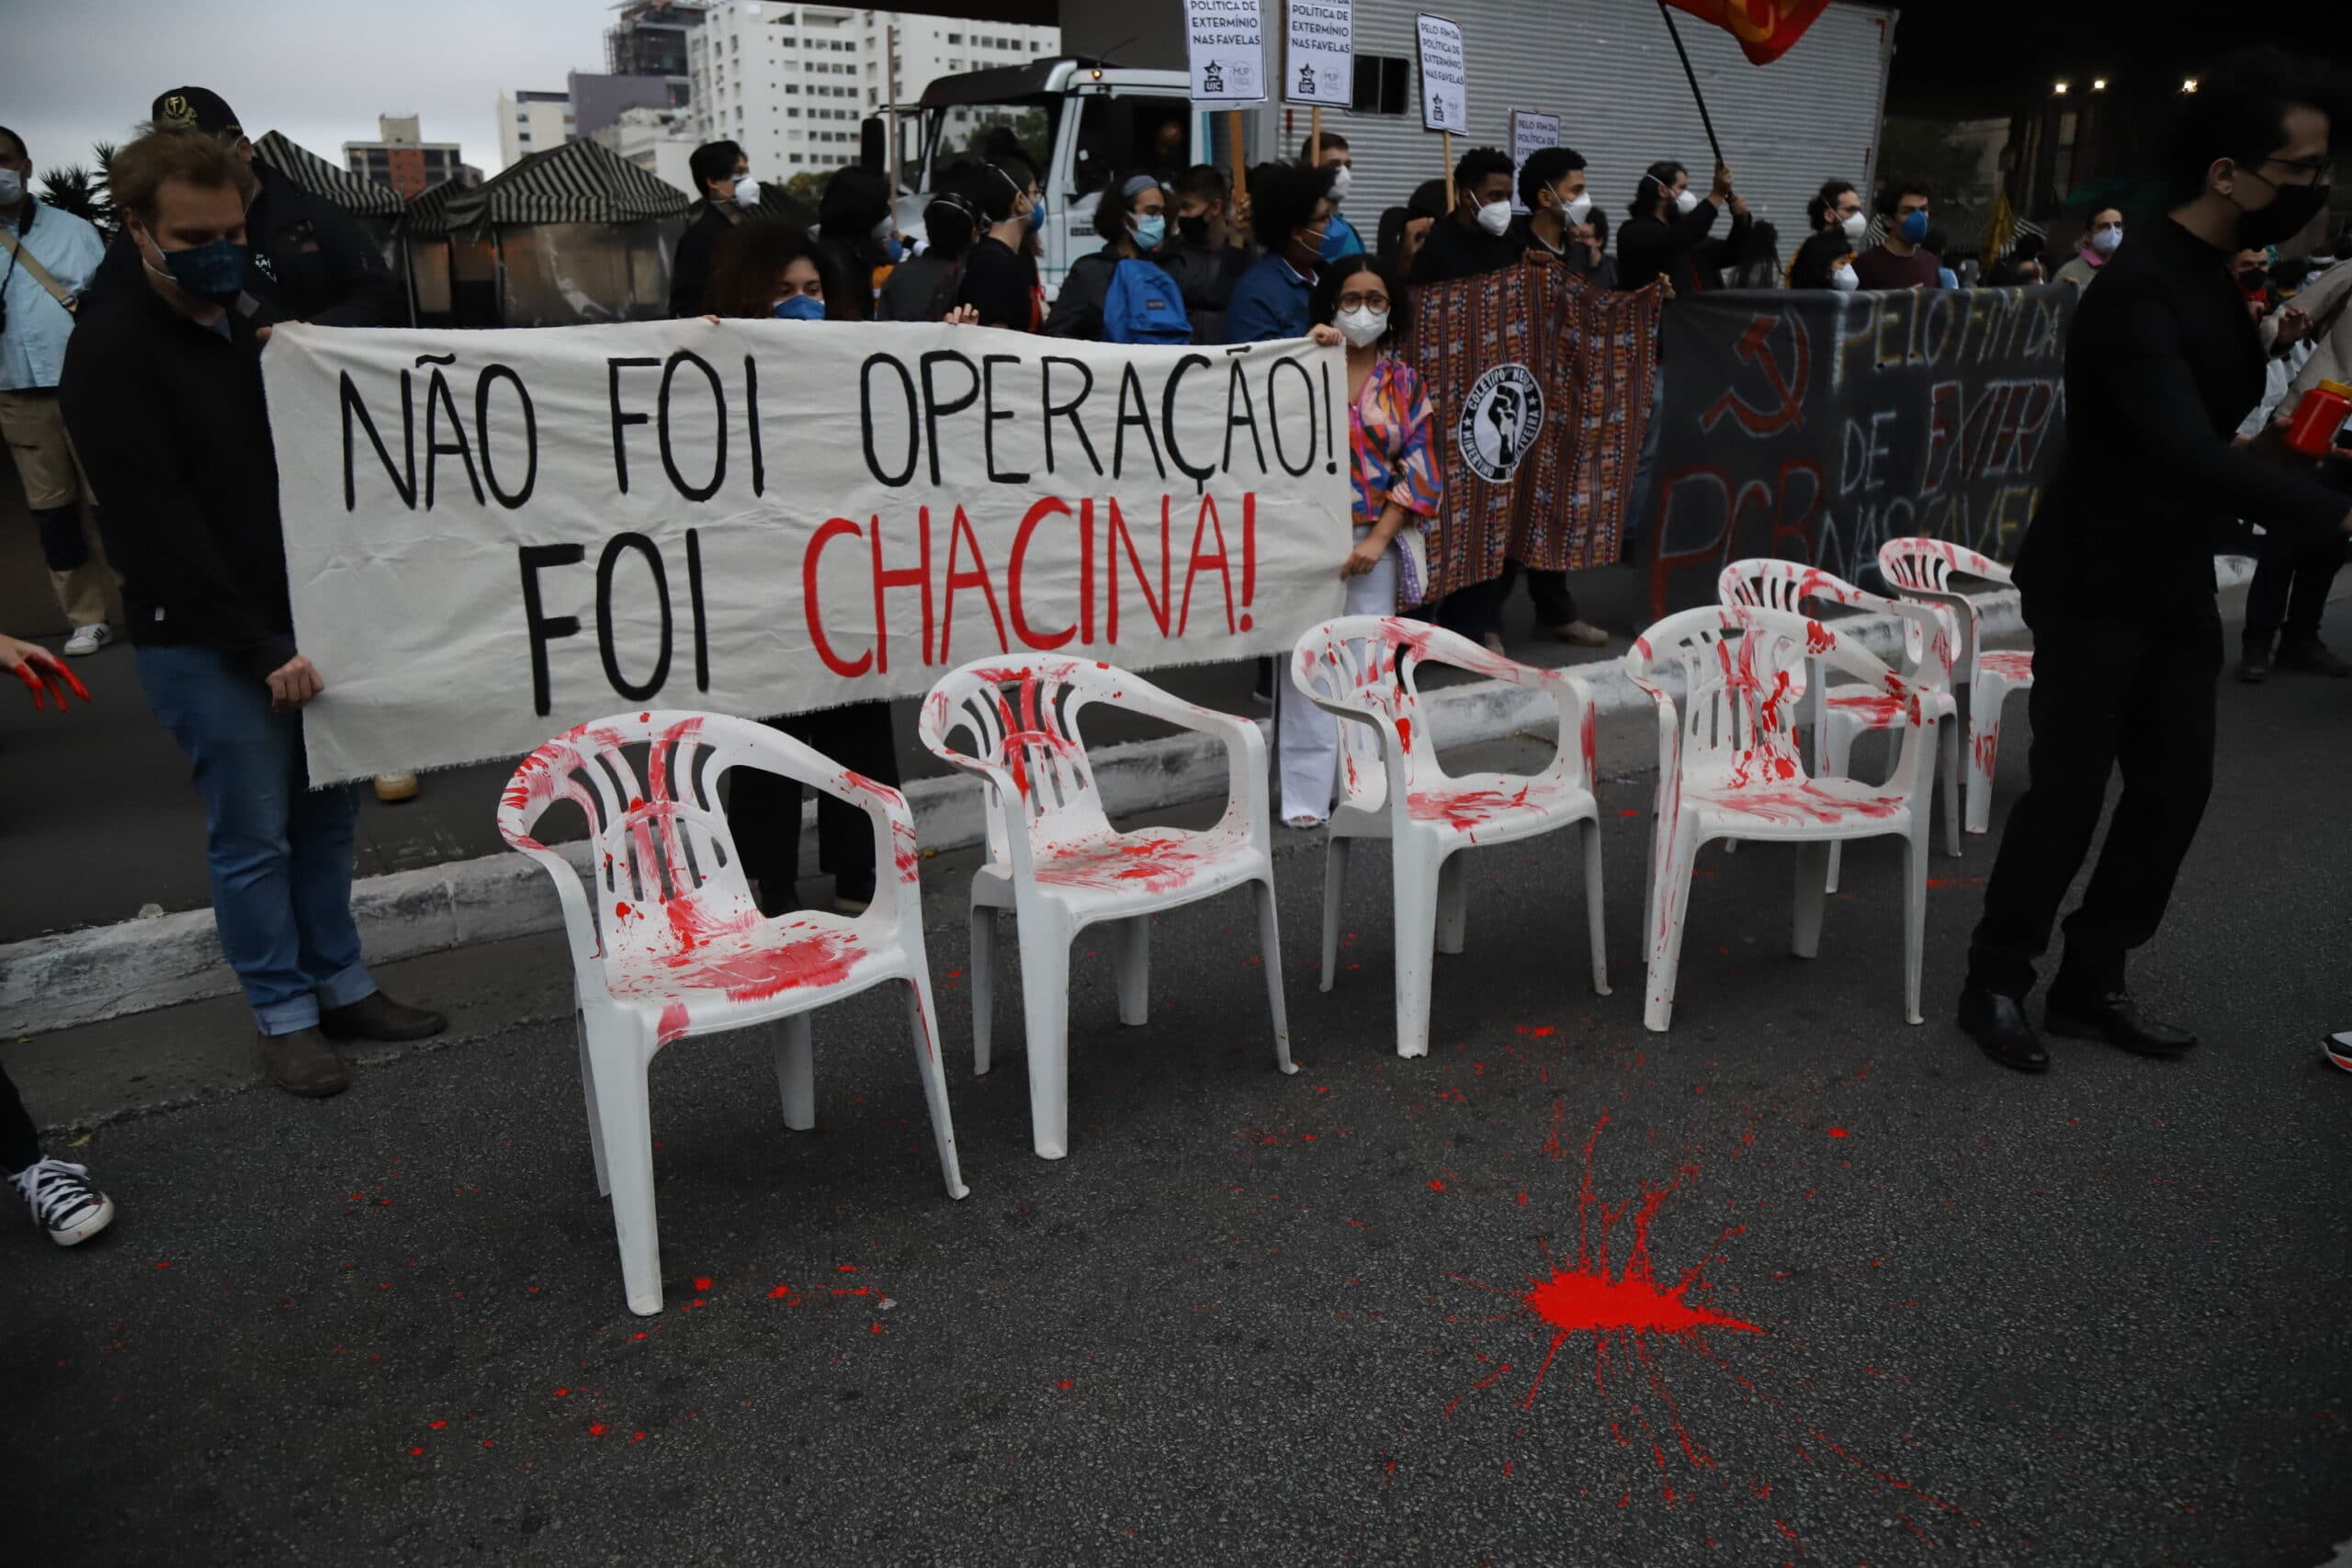 foto do ato mostra cadeiras de plástico manchadas de tinta vermelha. atrás, uma faixa; não foi operação, foi chacina.